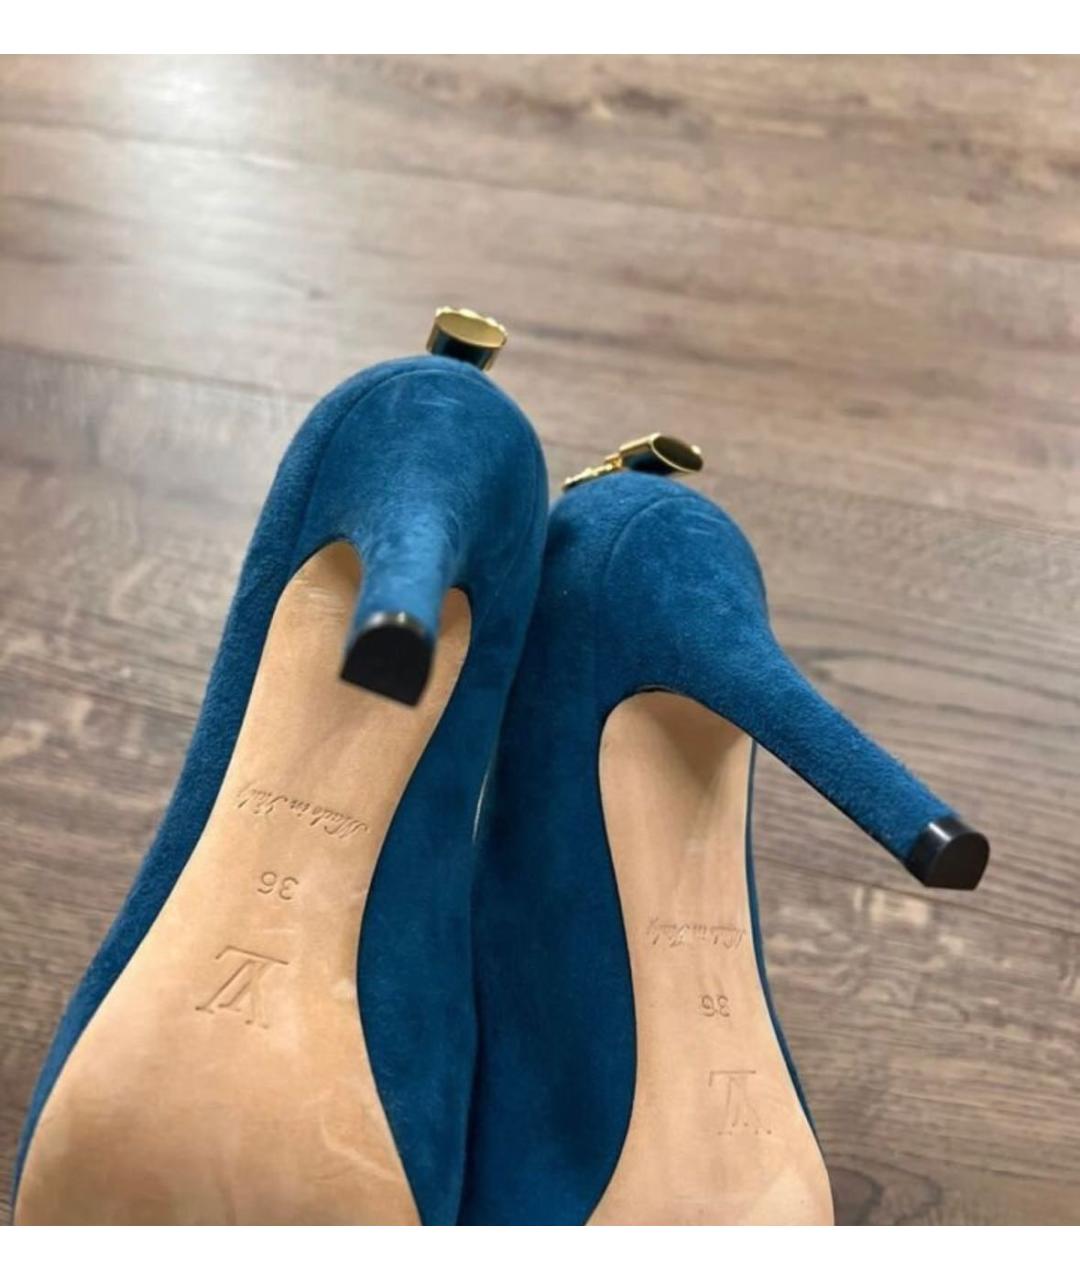 LOUIS VUITTON PRE-OWNED Синие замшевые туфли, фото 3